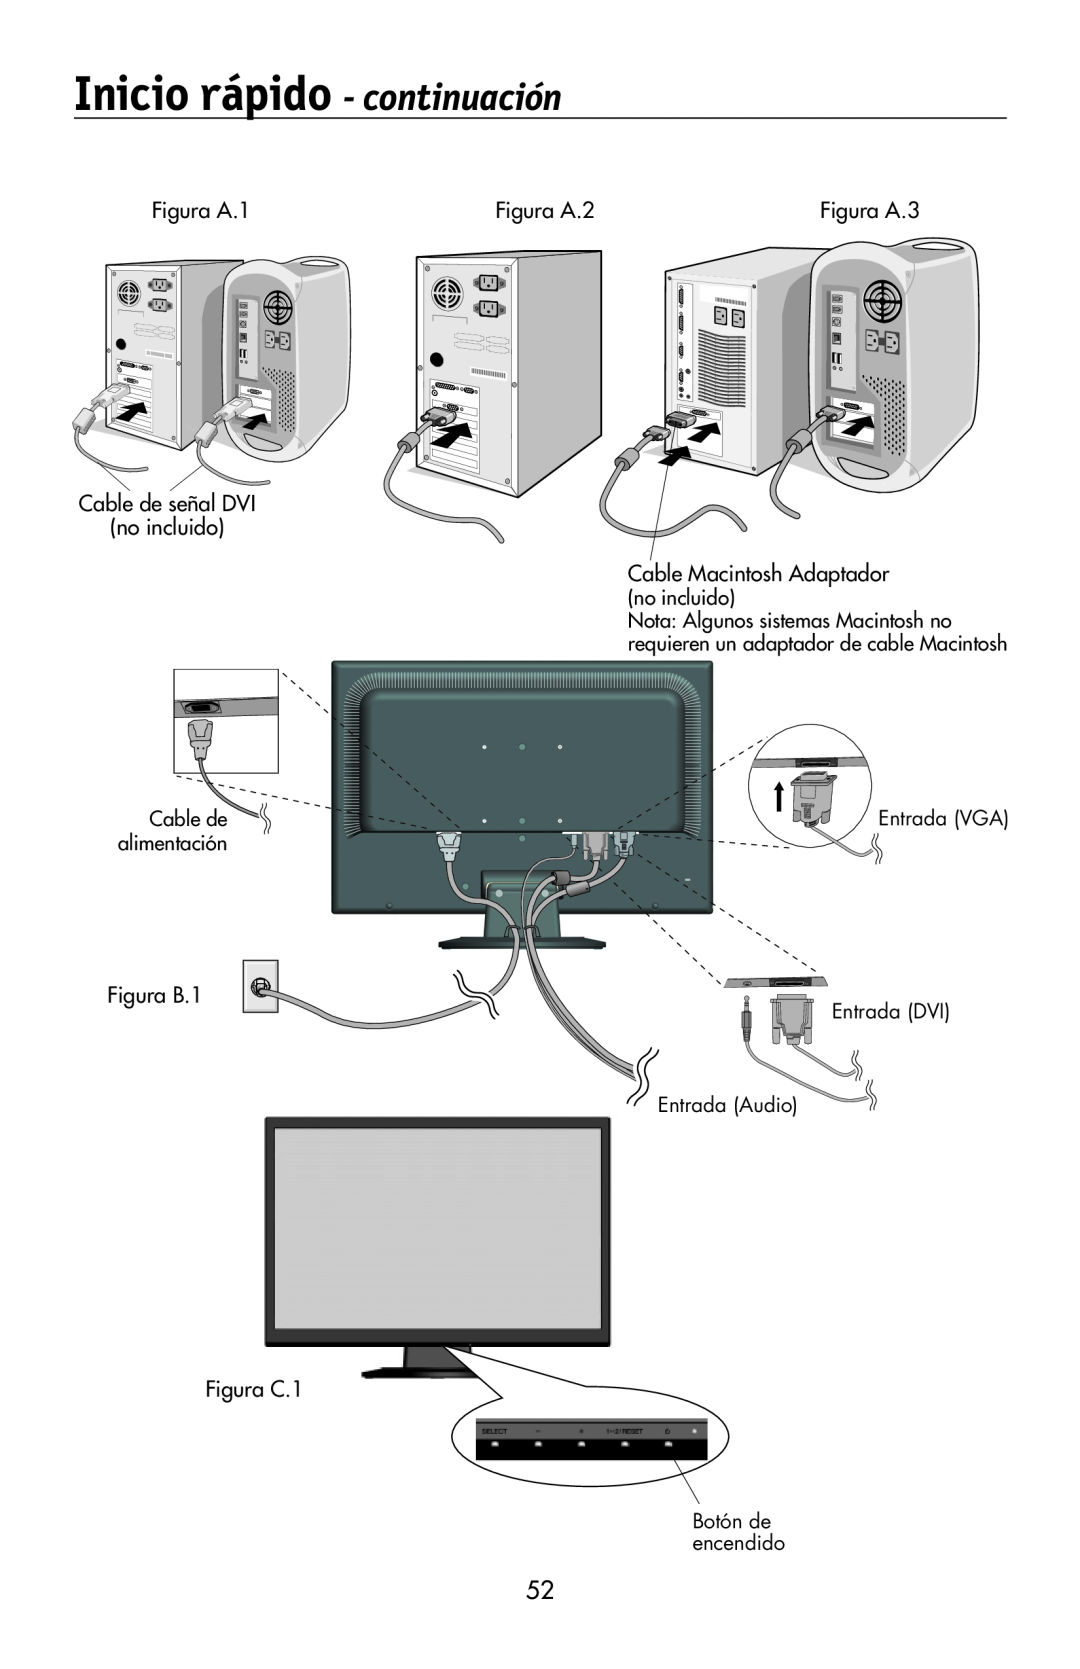 NEC LCD194WXM Inicio rápido - continuación, Figura A.3, no incluido, Entrada DVI Entrada Audio, Botón de encendido 